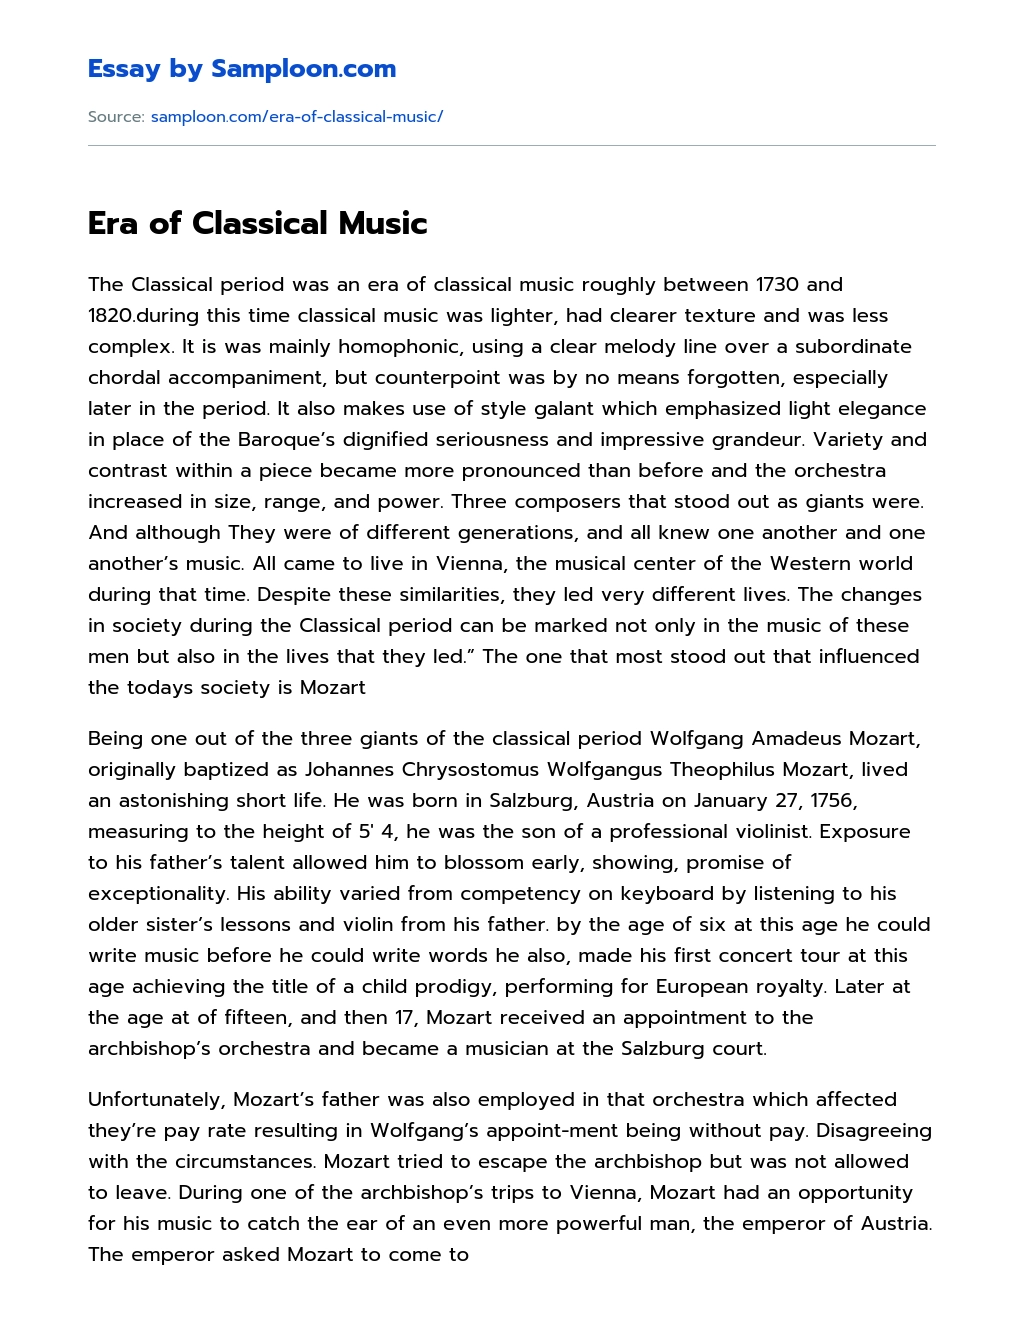 Era of Classical Music essay